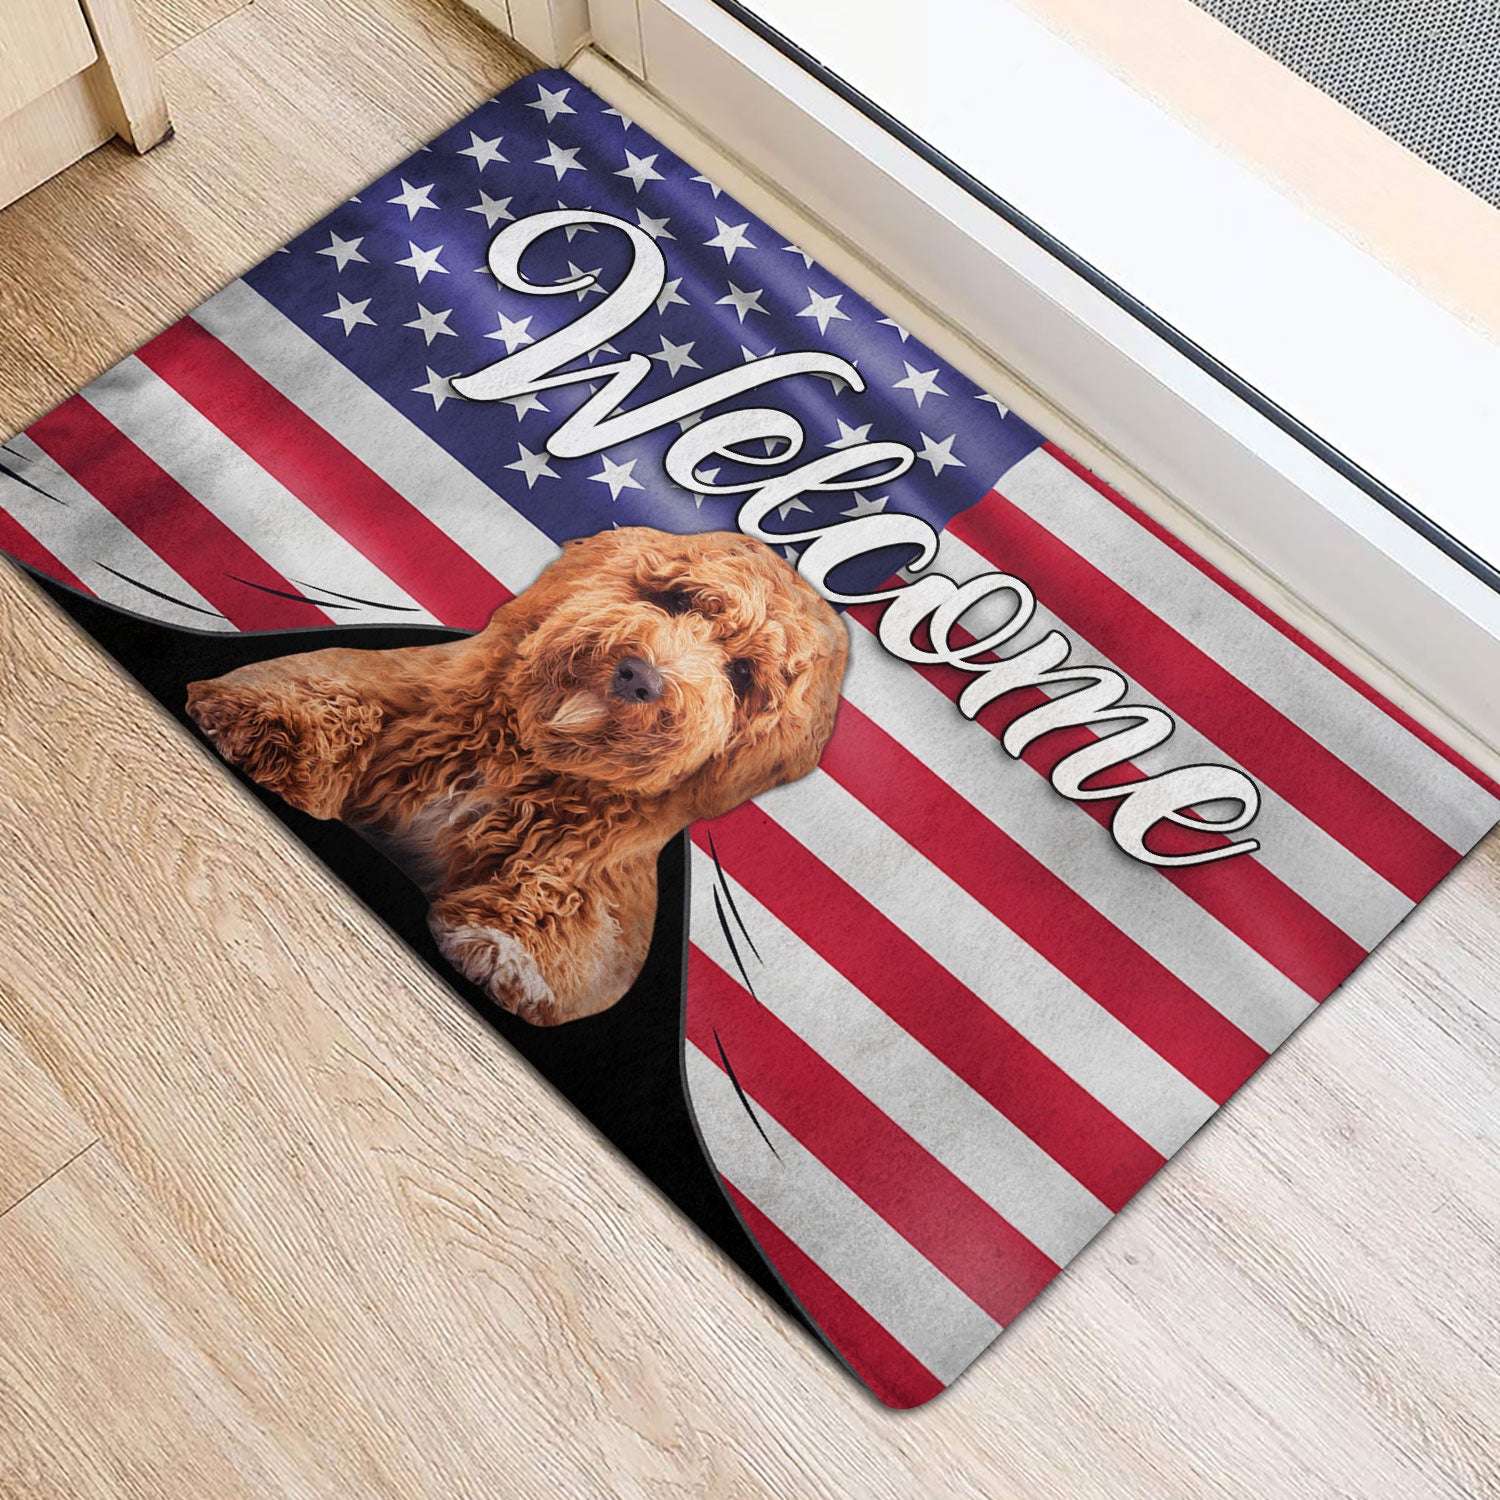 Ohaprints-Doormat-Outdoor-Indoor-Funny-Poodle-Dog-Welcome-American-Flag-Usa-Patriotic-Rubber-Door-Mat-94-